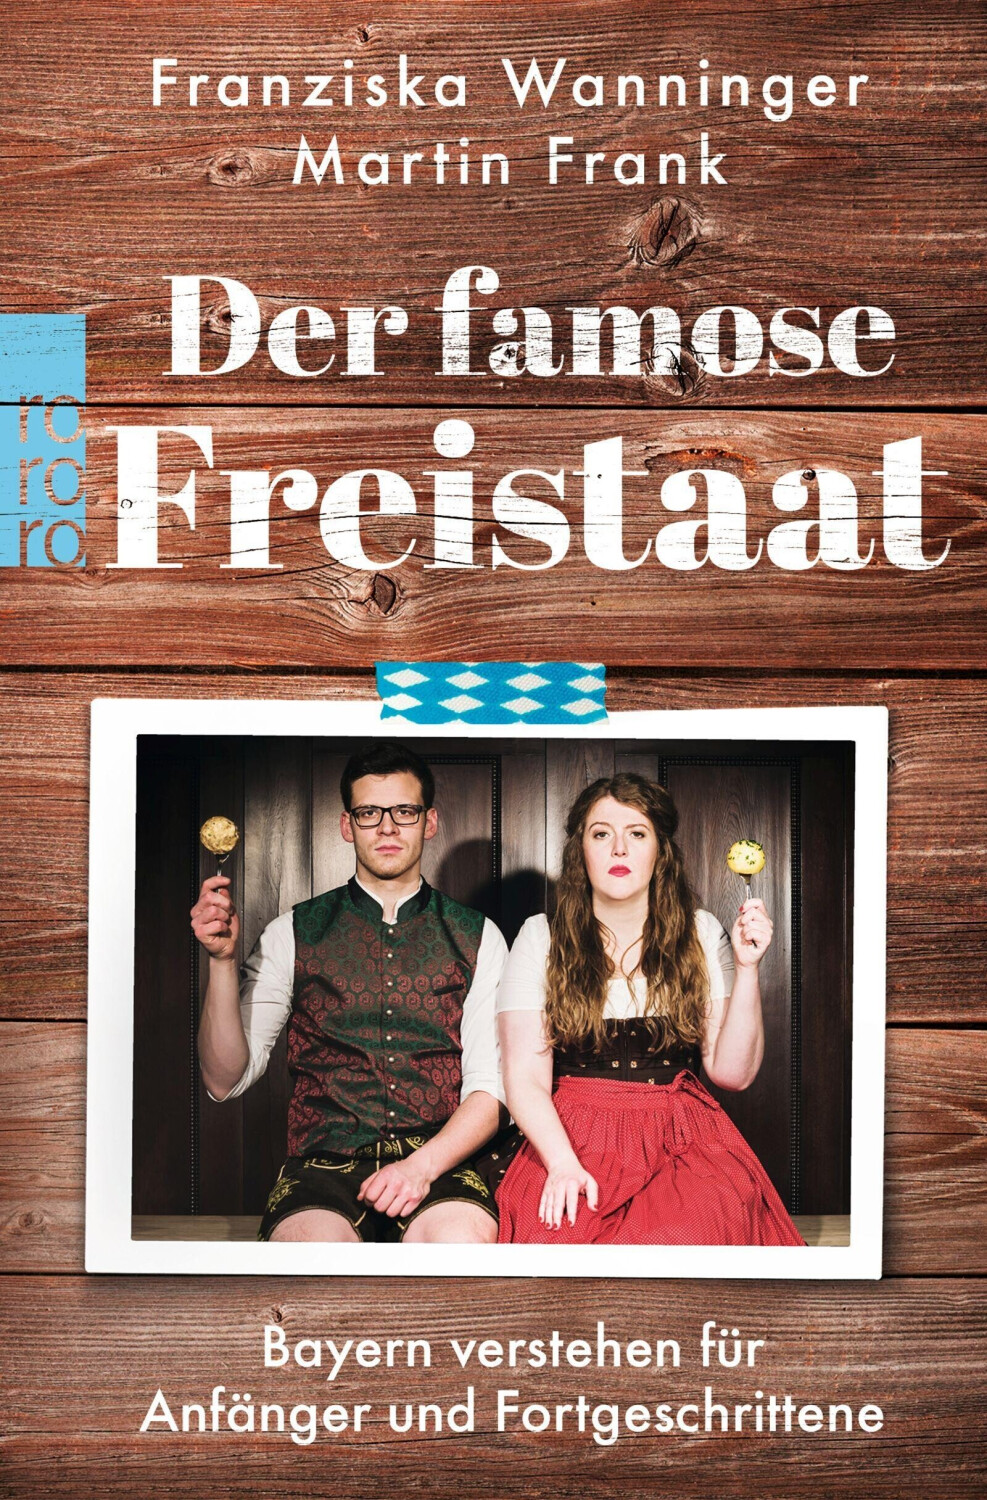 Der famose Freistaat (Franziska Wanninger)